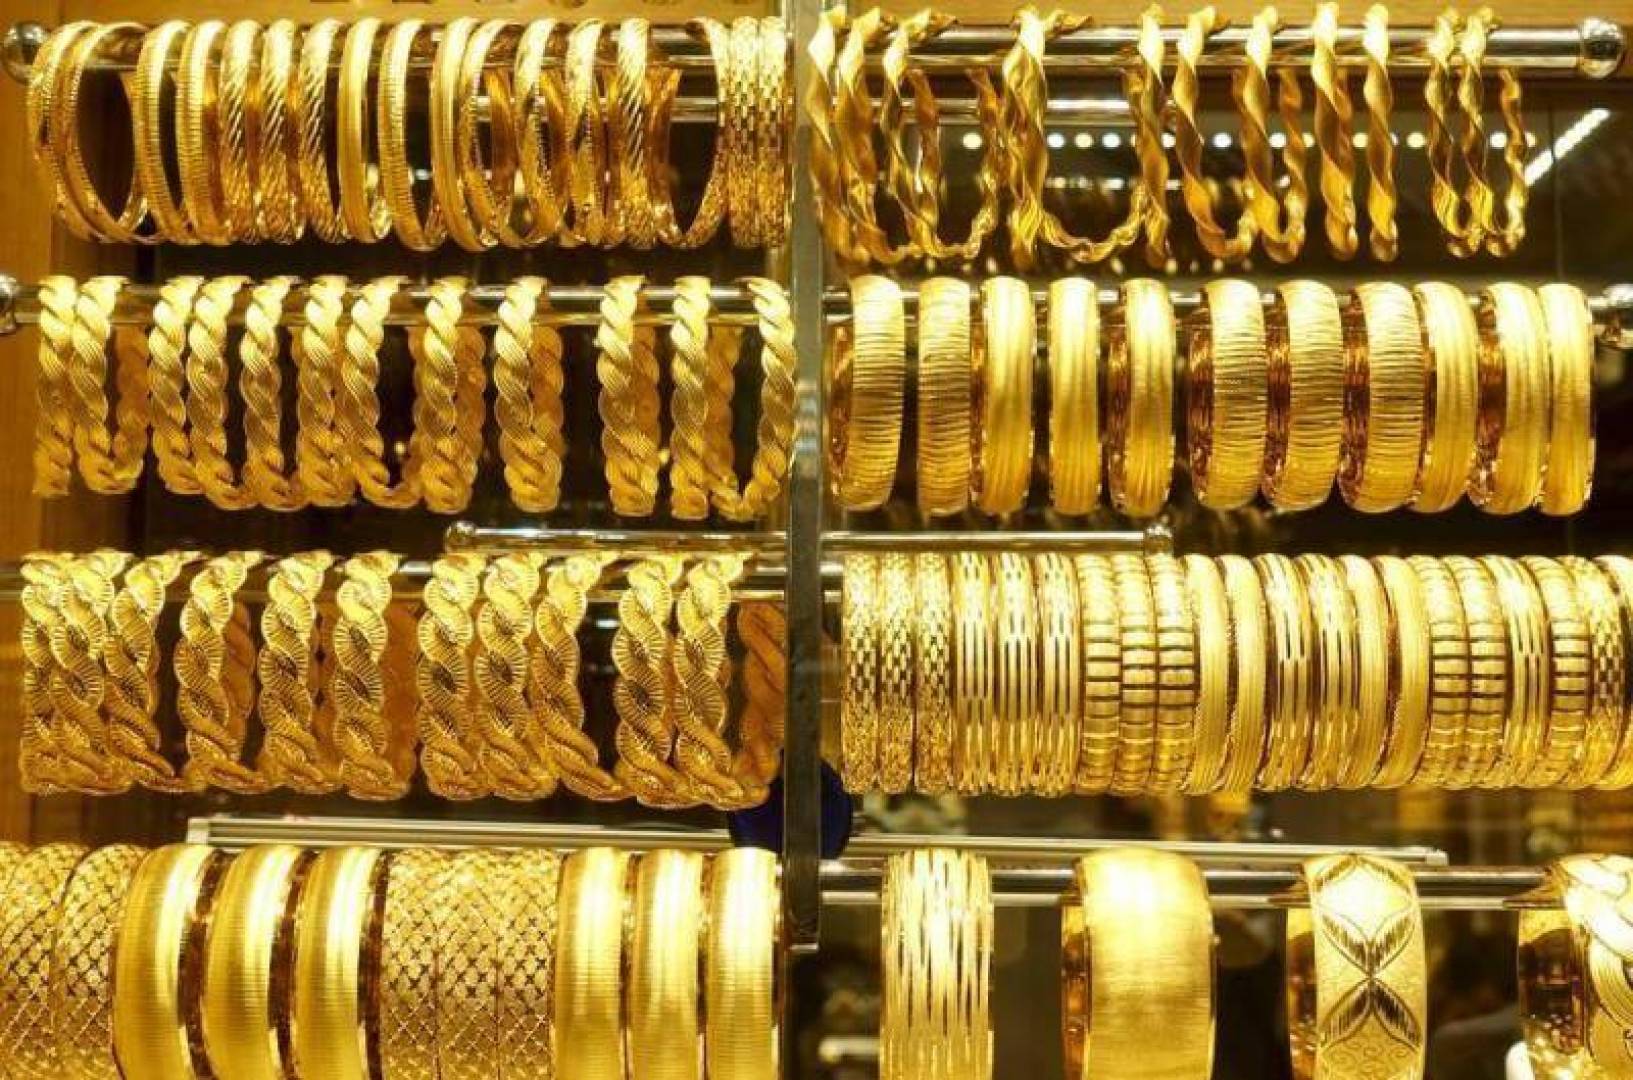 يتابع المستثمرون أسعار الذهب يوميًا، نظرًا لارتباط هذا المعدن الثمين بالاقتصاد العالمي، وكونه ملاذًا آمنًا للاستثمار. في ظل اضطرابات الأسواق الاقتصادية العالمية، يظل الذهب وجهة آمنة للكثيرين، خاصة مع تدهور اقتصادات العديد من الدول.أسعار الذهب اليوم السبت وصلت أسعار الذهب اليوم السبت في محلات الصاغة بدون المصنعية إلى الآتي: بلغ سعر جرام الذهب عيار 24 حوالي 3600 جنيه. سجل سعر جرام الذهب عيار 21 حوالي 3150 جنيه. استقر سعر جرام الذهب عيار 18 عند 2700 جنيه. بلغ سعر جرام الذهب عيار 14 حوالي 2100 جنيه. سجل سعر الجنيه الذهب 25,200 جنيه. سعر الذهب بالمصنعية يختلف سعر الذهب بالمصنعية من محل لآخر ومن منطقة لأخرى، حيث تتراوح قيمة المصنعية بين 30 و65 جنيهًا، وتتراوح بين 7% و10% من سعر جرام الذهب، باختلاف محلات الصاغة، المحافظات، والتجار. أسعار الذهب عالميًا على المستوى العالمي، تراجعت أسعار الذهب مؤخرًا لكنها ما زالت تتجه نحو تحقيق ارتفاع للربع الثالث على التوالي. يترقب المستثمرون بيانات التضخم الأمريكية، التي تؤثر بشكل كبير على أسعار الذهب. في المعاملات الفورية، ارتفع سعر الذهب بنسبة 0.28% ليصل إلى 2334.32 دولارًا للأونصة، بينما صعدت العقود الأمريكية الآجلة للذهب بنسبة 0.35% لتصل إلى 2344.80 دولارًا للأونصة. يعود هذا الارتفاع إلى تحسن آفاق التيسير النقدي في الولايات المتحدة، بالإضافة إلى شراء الصين كميات كبيرة من الذهب لاحتياطياتها، مما دعم أسعار الذهب في الربع الثاني. ينتظر المستثمرون صدور مؤشر أسعار نفقات الاستهلاك الشخصي في الولايات المتحدة، وهو مقياس التضخم المفضل لدى البنك المركزي الأمريكي.